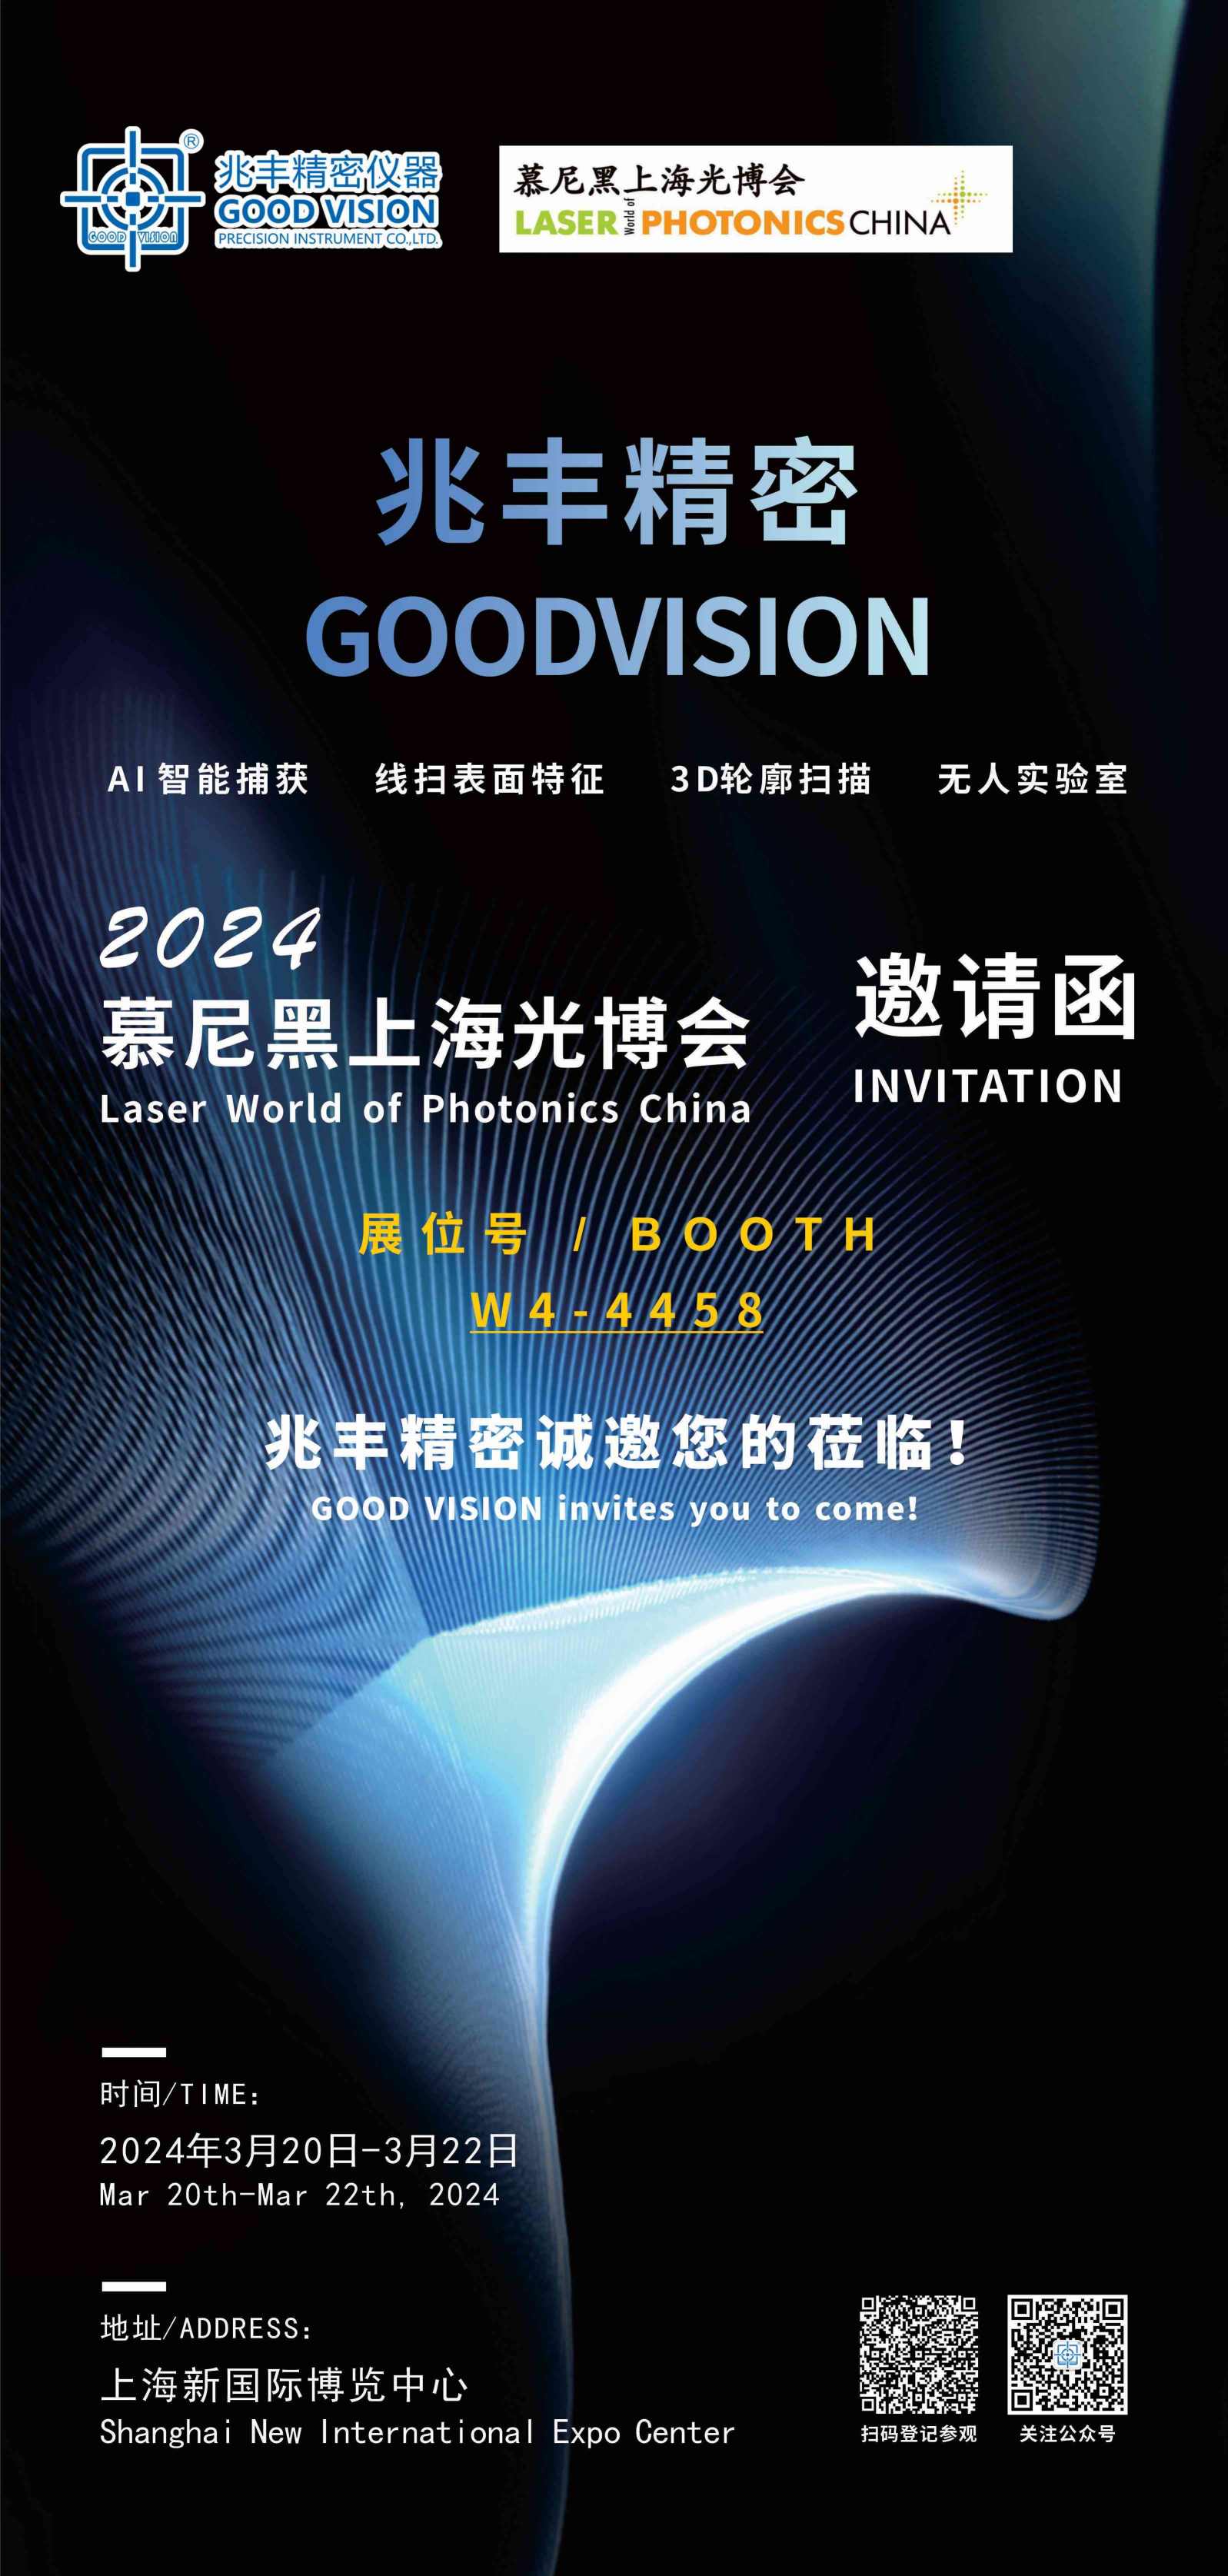 东莞市兆丰精密仪器有限公司诚挚邀请您参加2024慕尼黑上海光博会！